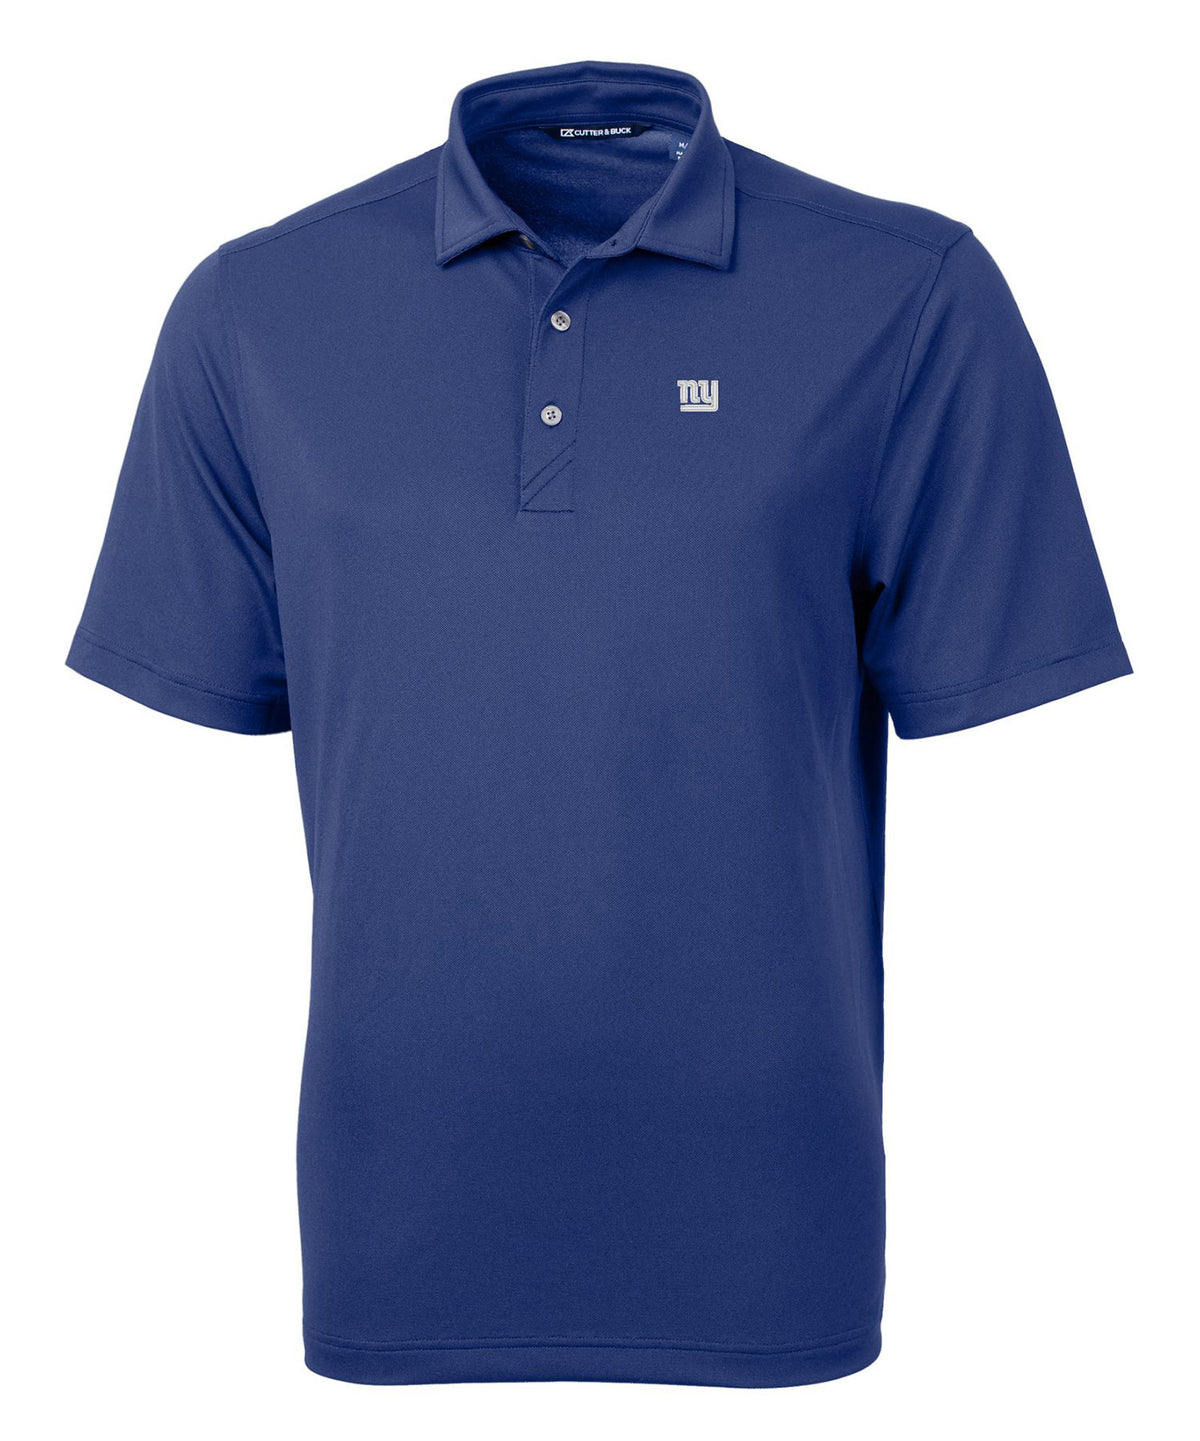 Cutter & Buck New York Giants Short Sleeve Polo Knit Shirt, Men's Big & Tall